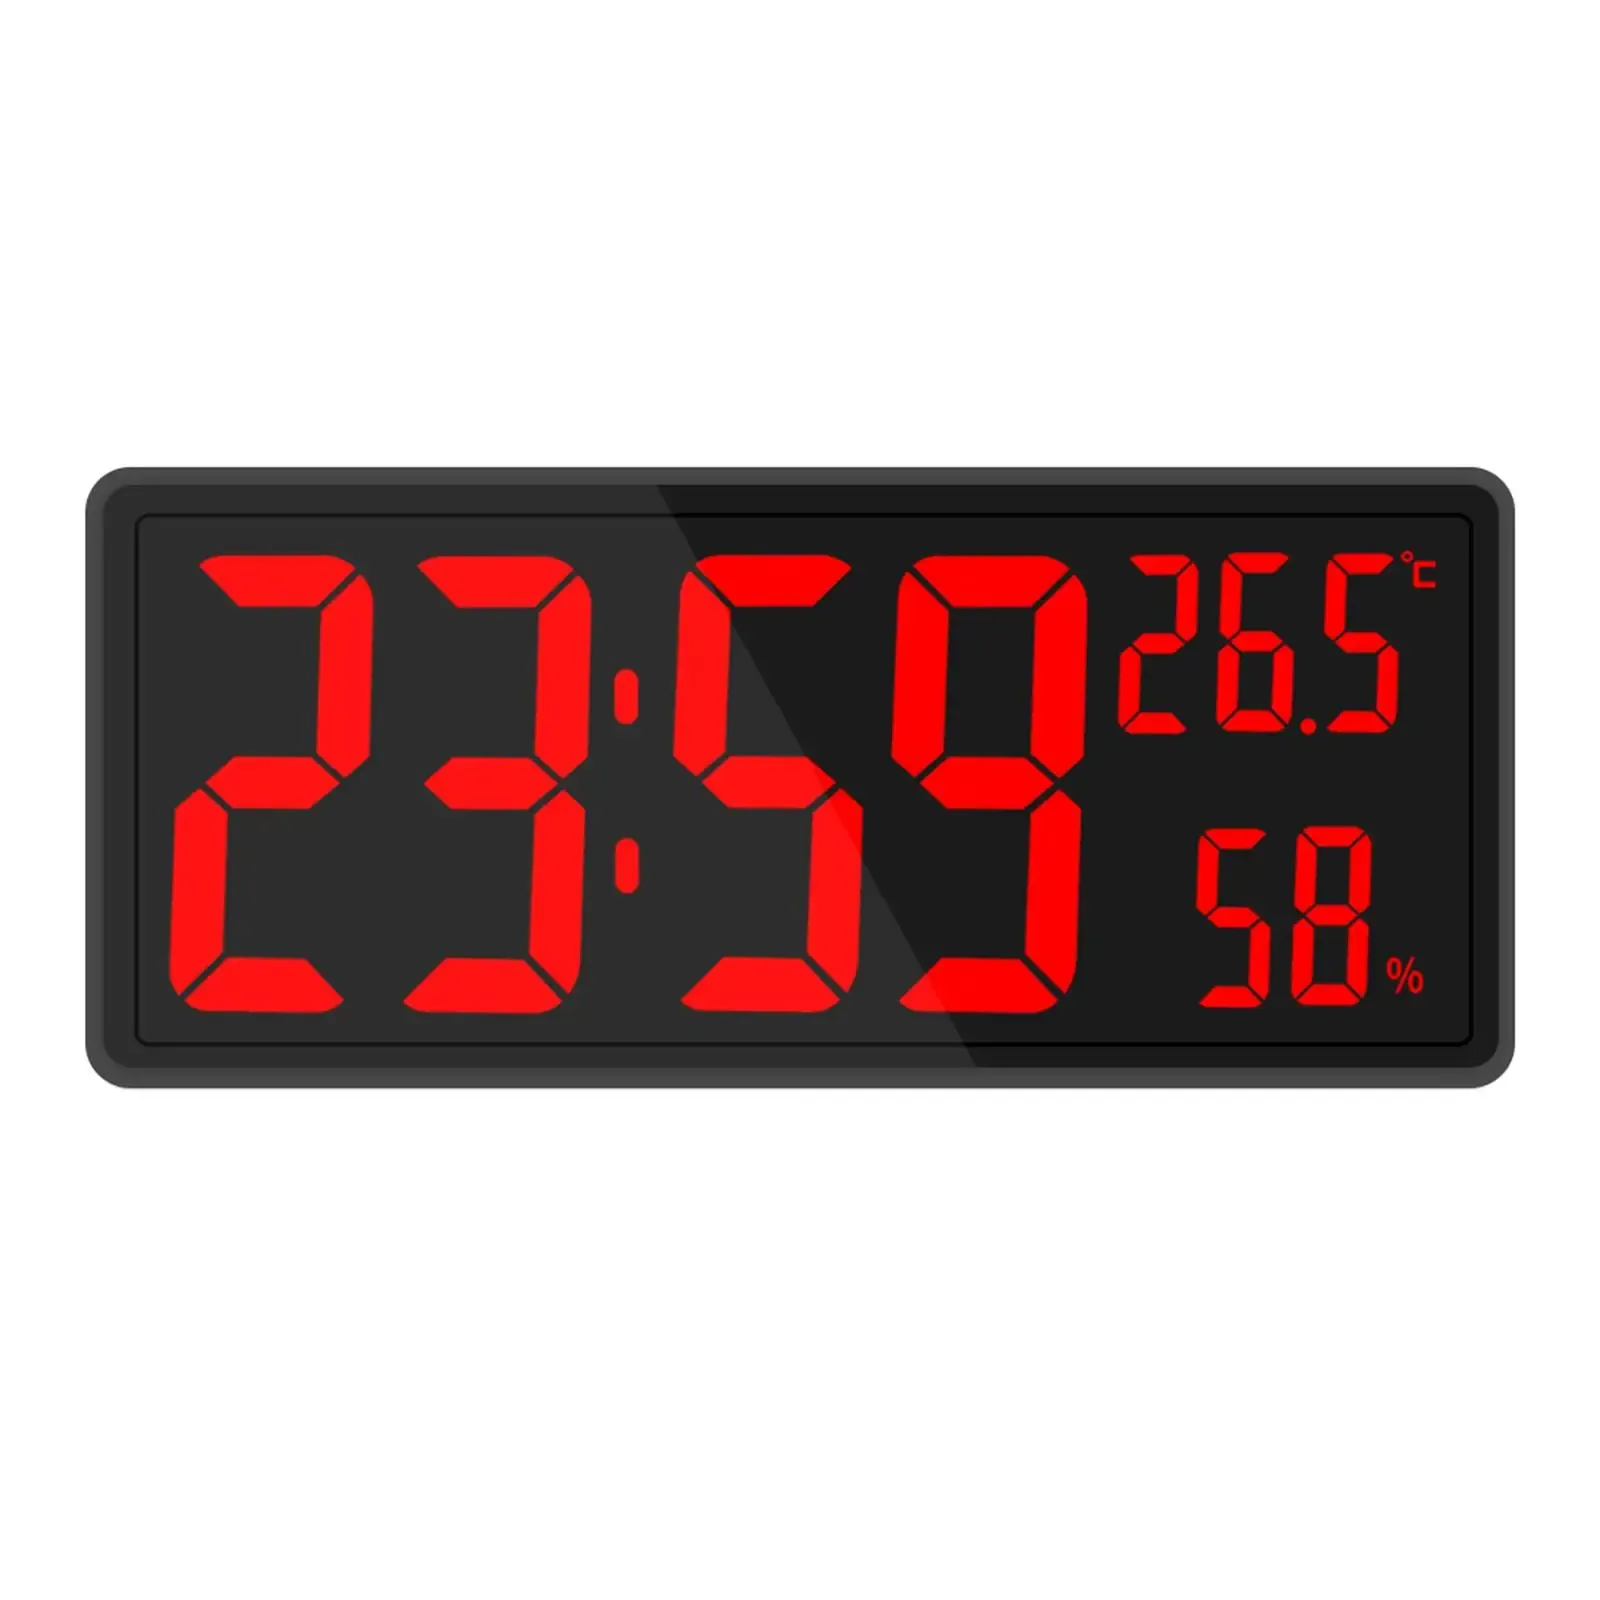 Orologi overnize oversize orologio grande display a led temperatura elettronica